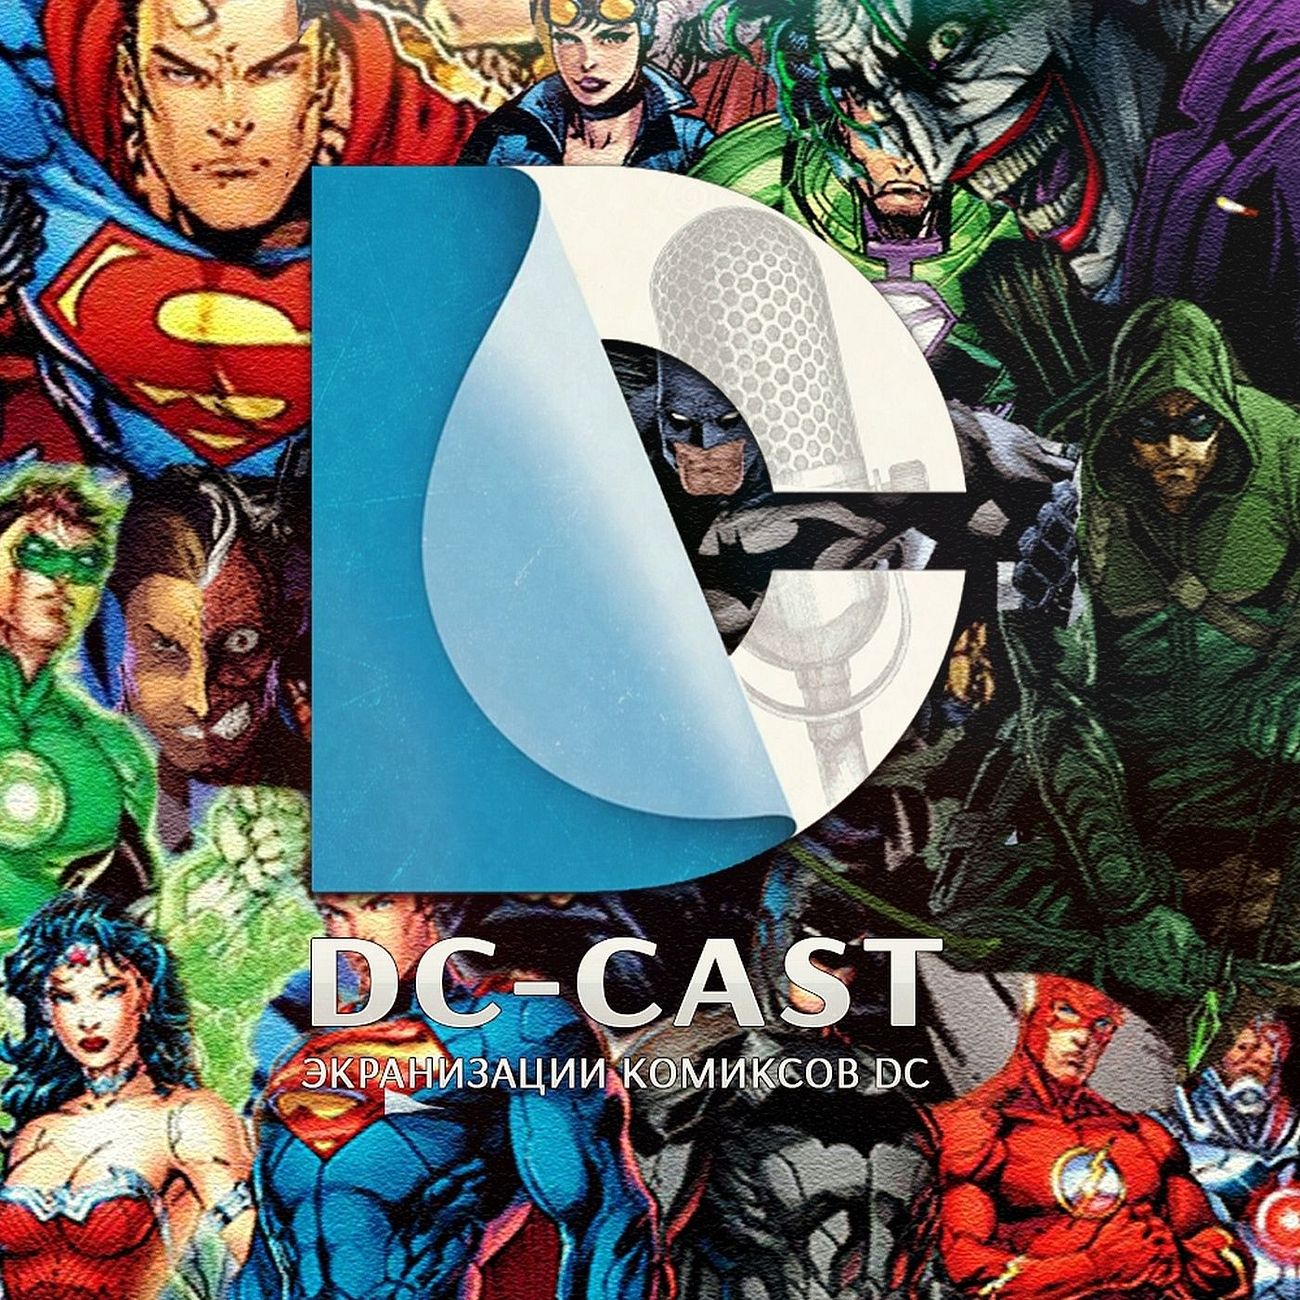 DC-CAST - экранизации комиксов DC